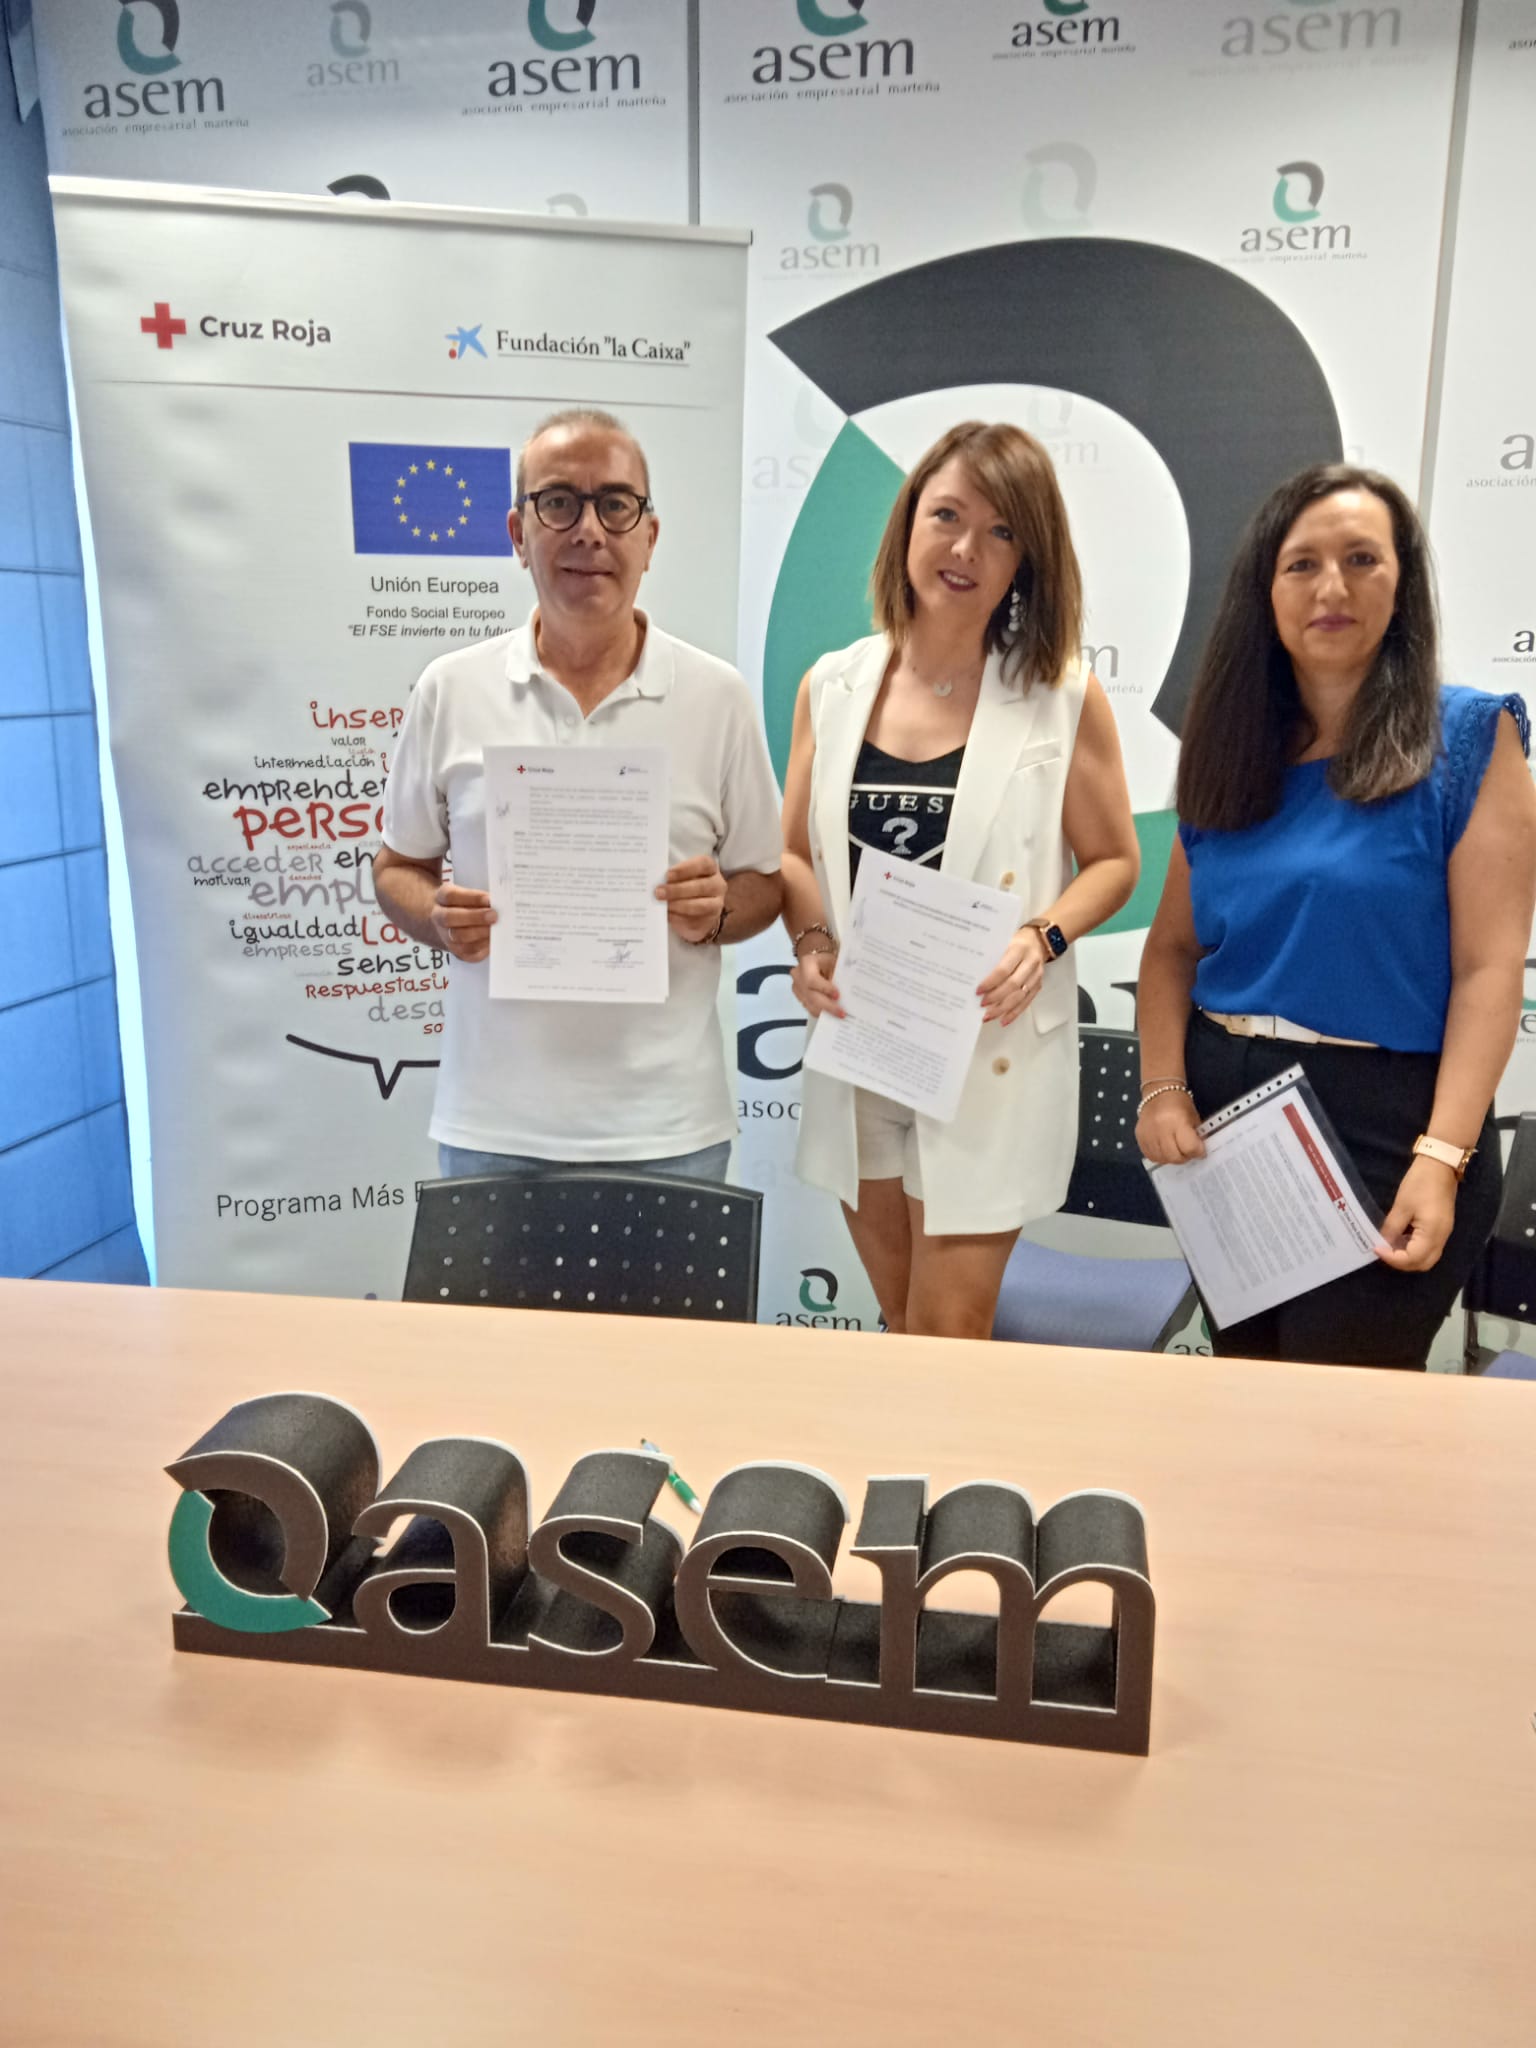 Renovado el convenio de colaboración entre ASEM y Cruz Roja